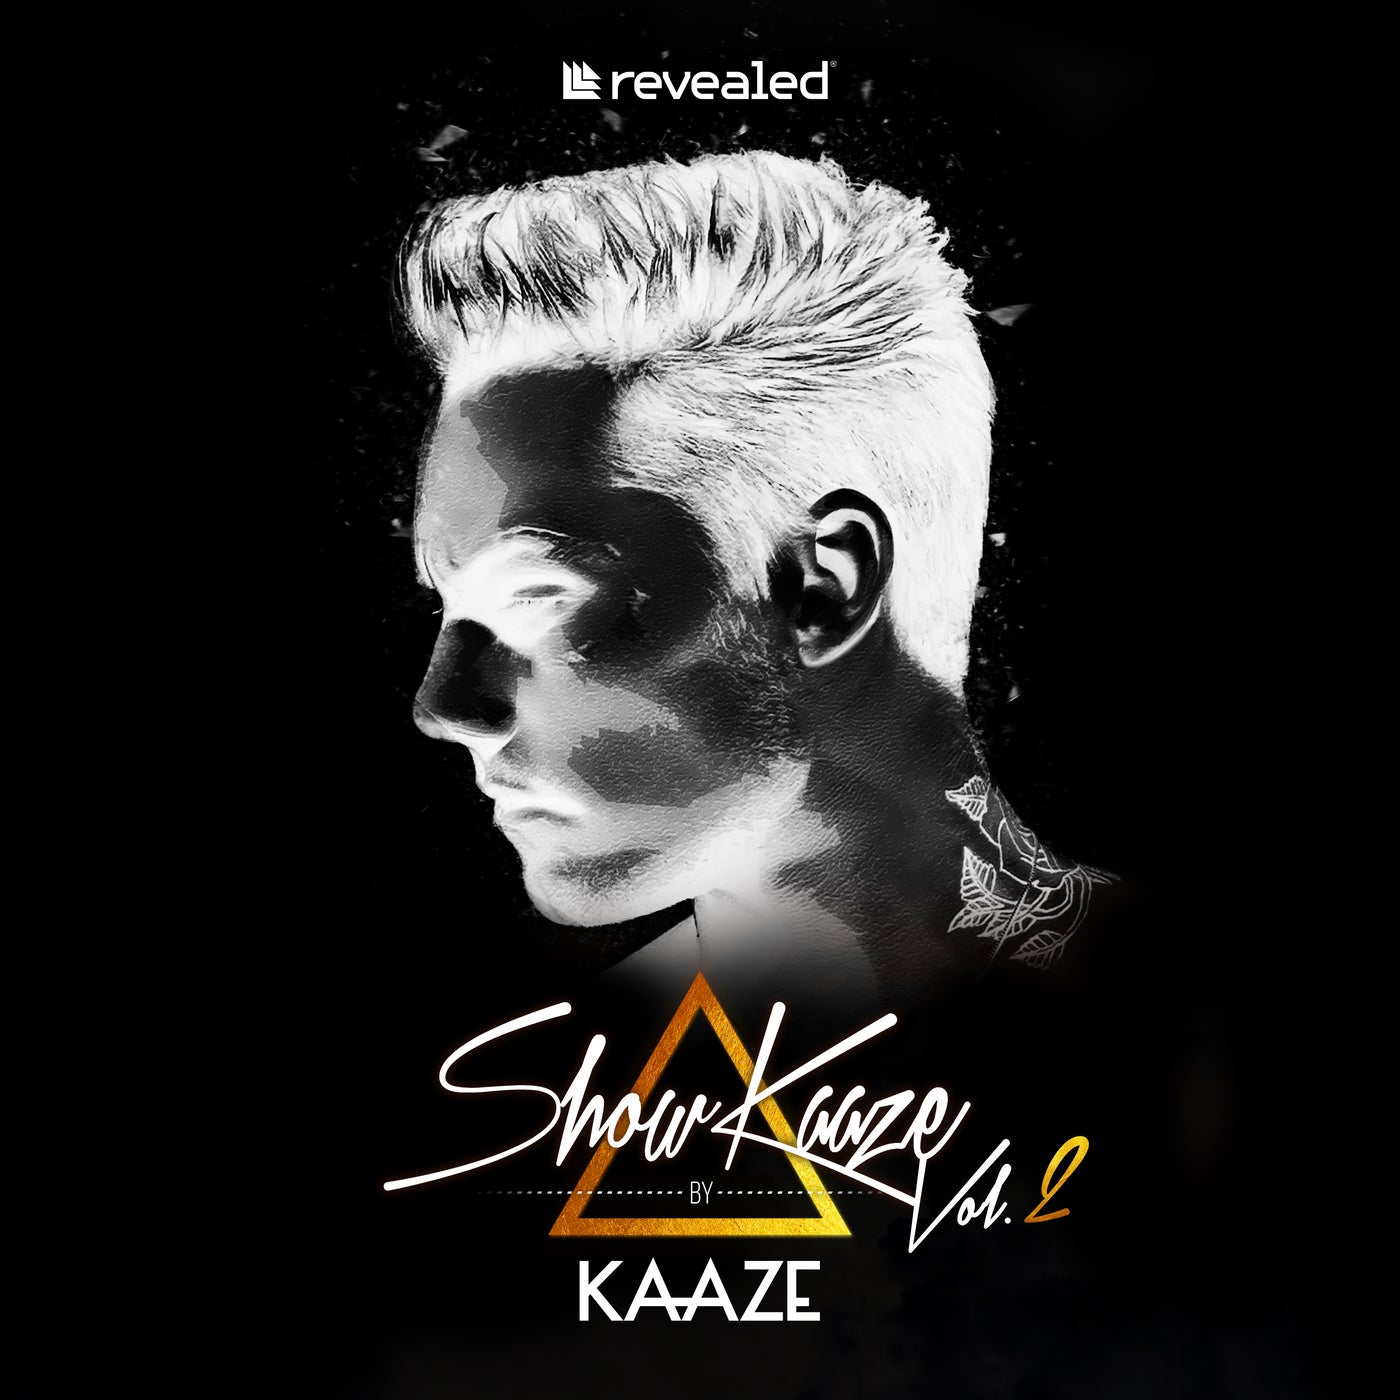 ShowKaaze Vol. 2